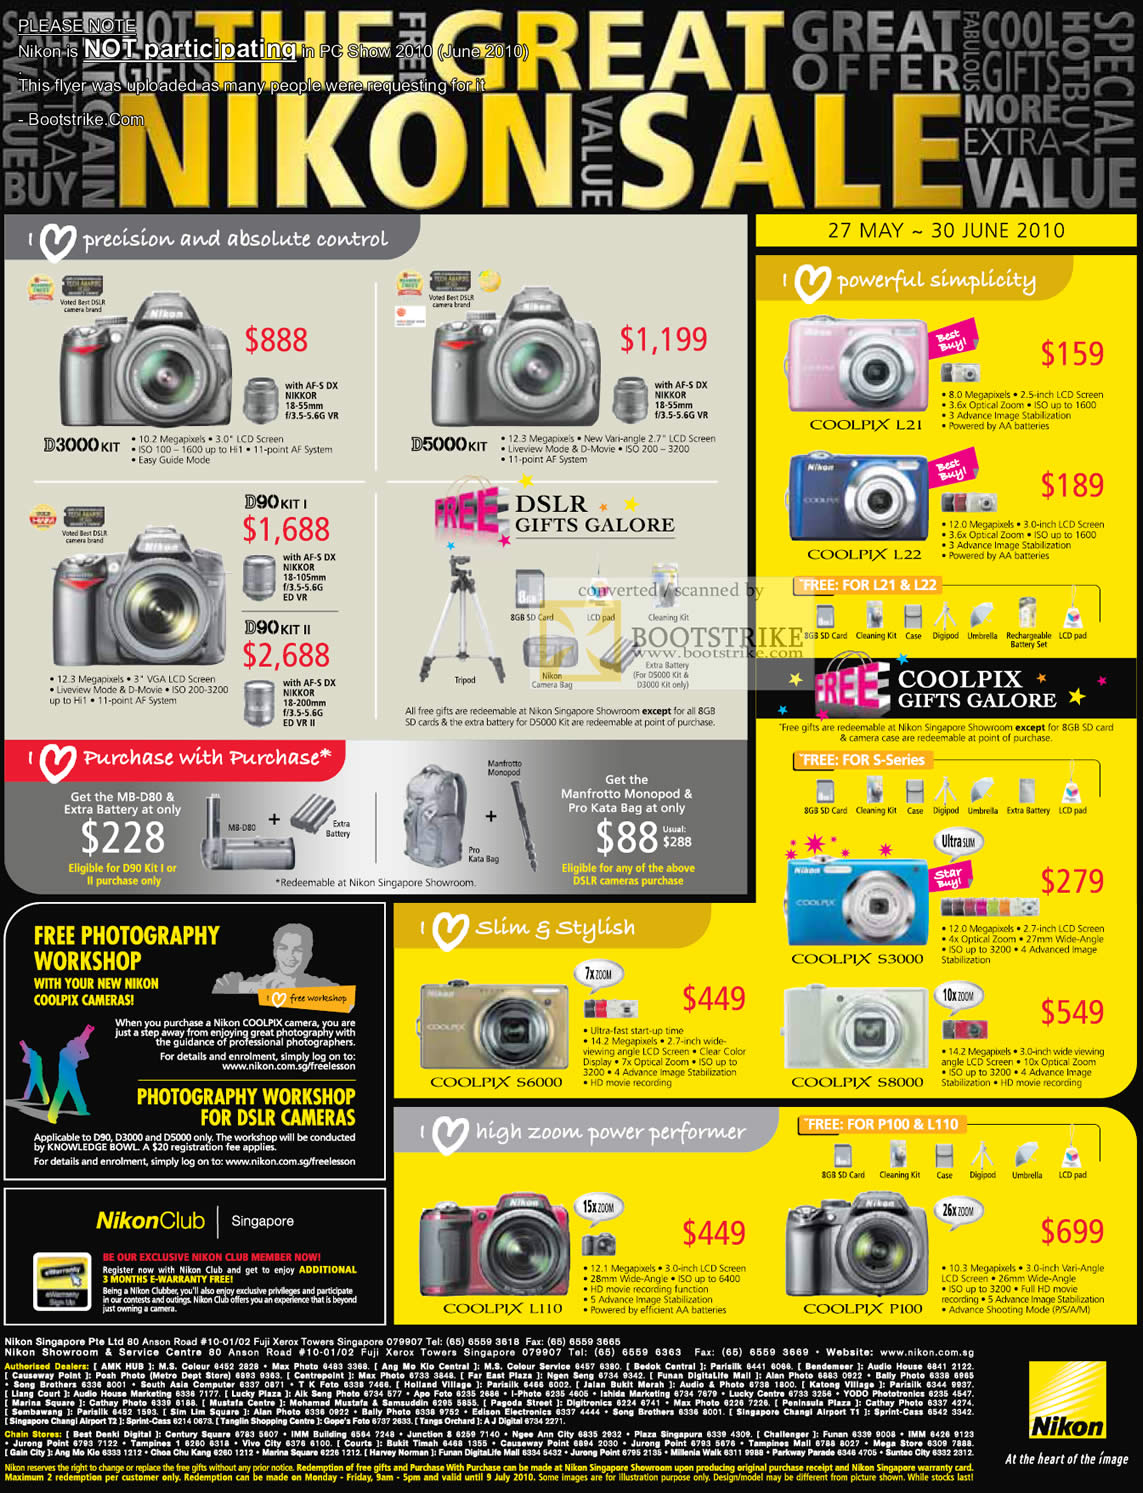 PC Show 2010 price list image brochure of Nikon NOT PARTICIPATING Digital Cameras DSLR D3000 D5000 Coolpix L21 L22 D90 S6000 S3000 S8000 L110 P100